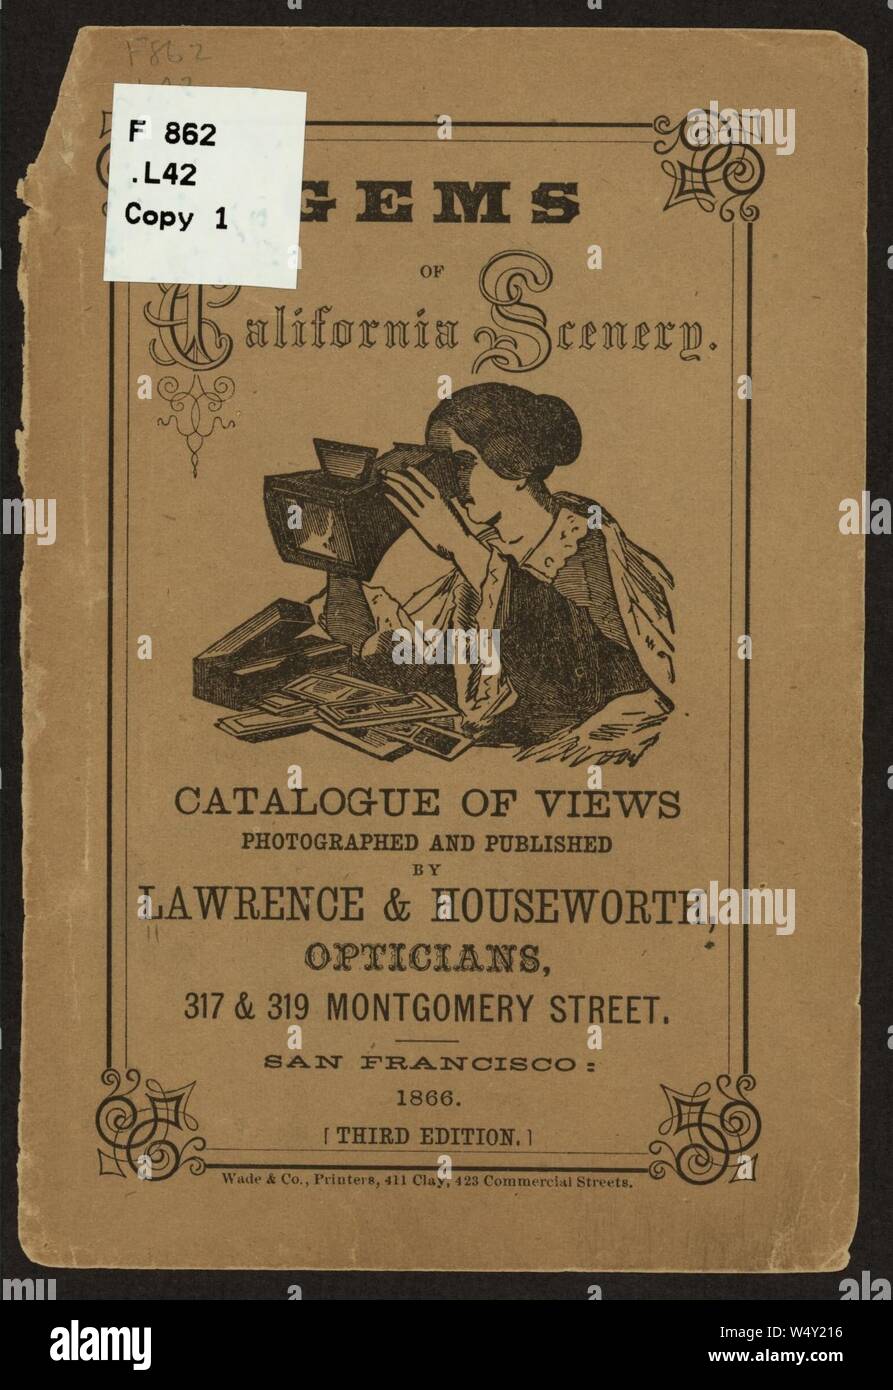 Abdeckung der Edelsteine von Kalifornien Landschaft - Katalog der Blick fotografiert und von Lawrence & Houseworth, Optiker veröffentlicht. Stockfoto